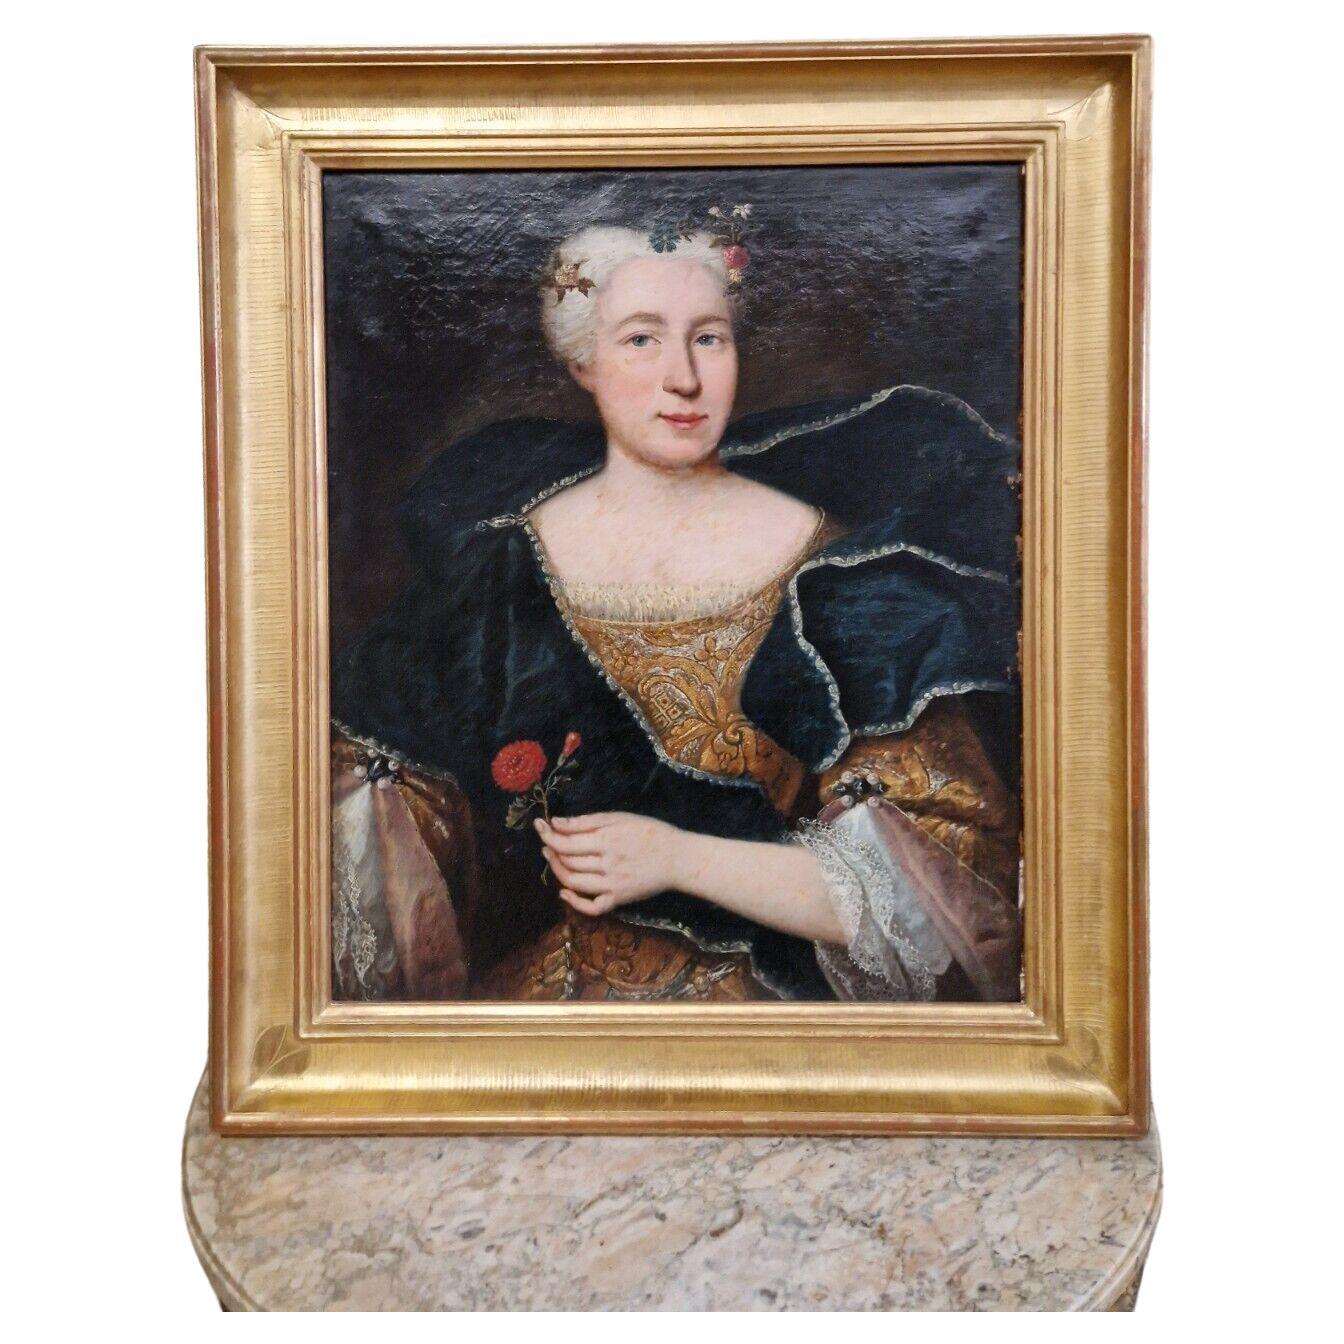 ROCAILLE-ANTIQUITÄTEN

Dieses exquisite Ölgemälde aus dem 18. Jahrhundert stellt möglicherweise ein Porträt von Maria Anna Adelheid von Hohenlohe-Bartenstien dar.  (1701-1758)  aus dem 18. Jahrhundert, schön gerahmt in einem vergoldeten Holzrahmen